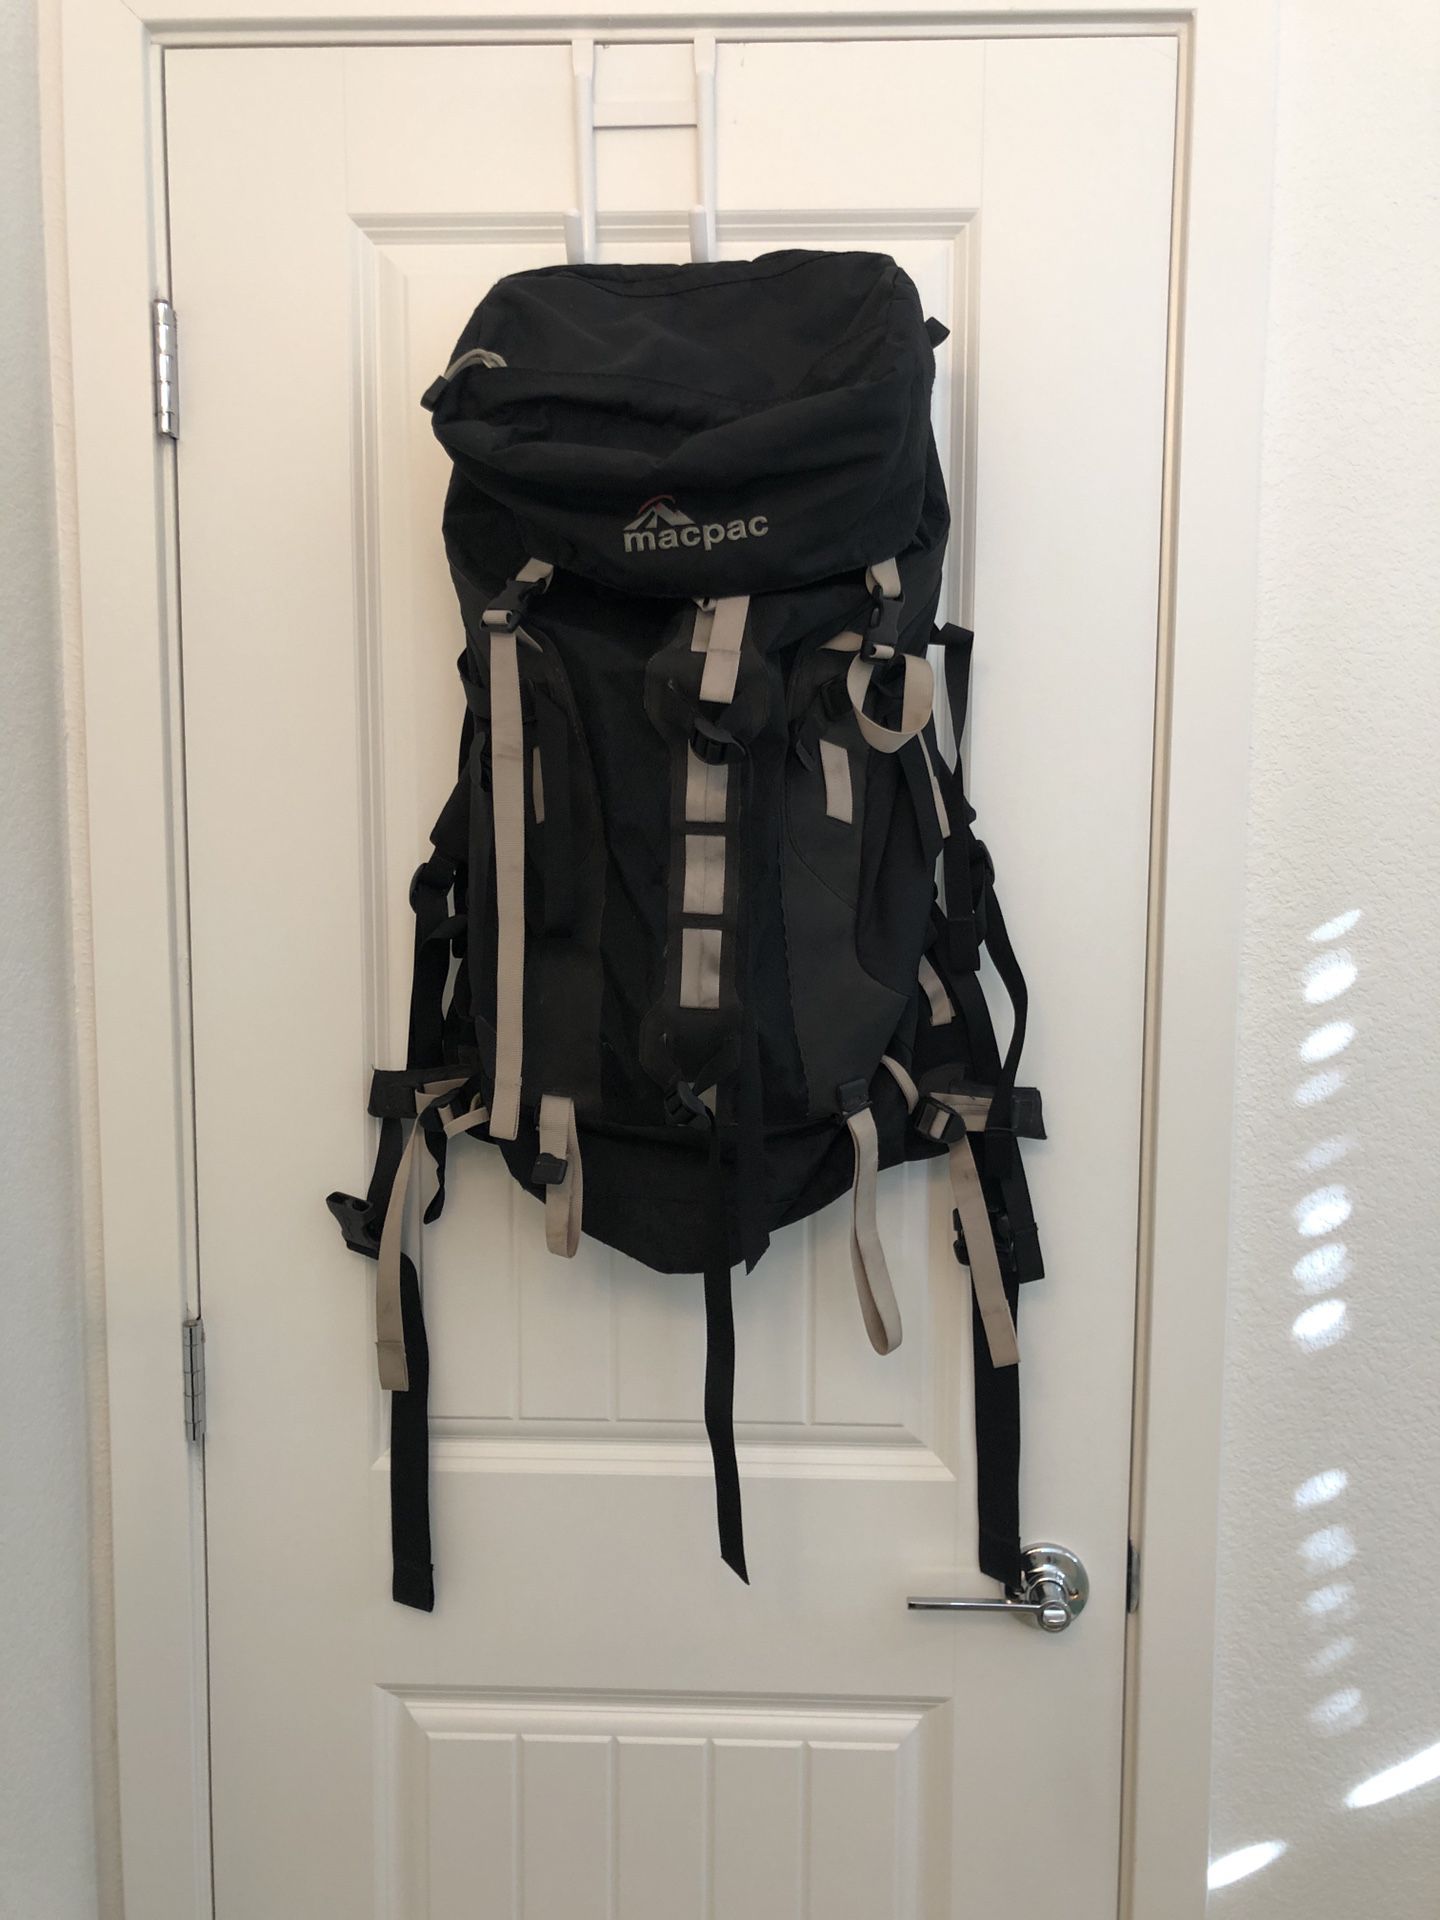 MacPac Backpacking/Alpine/Hiking Backpack